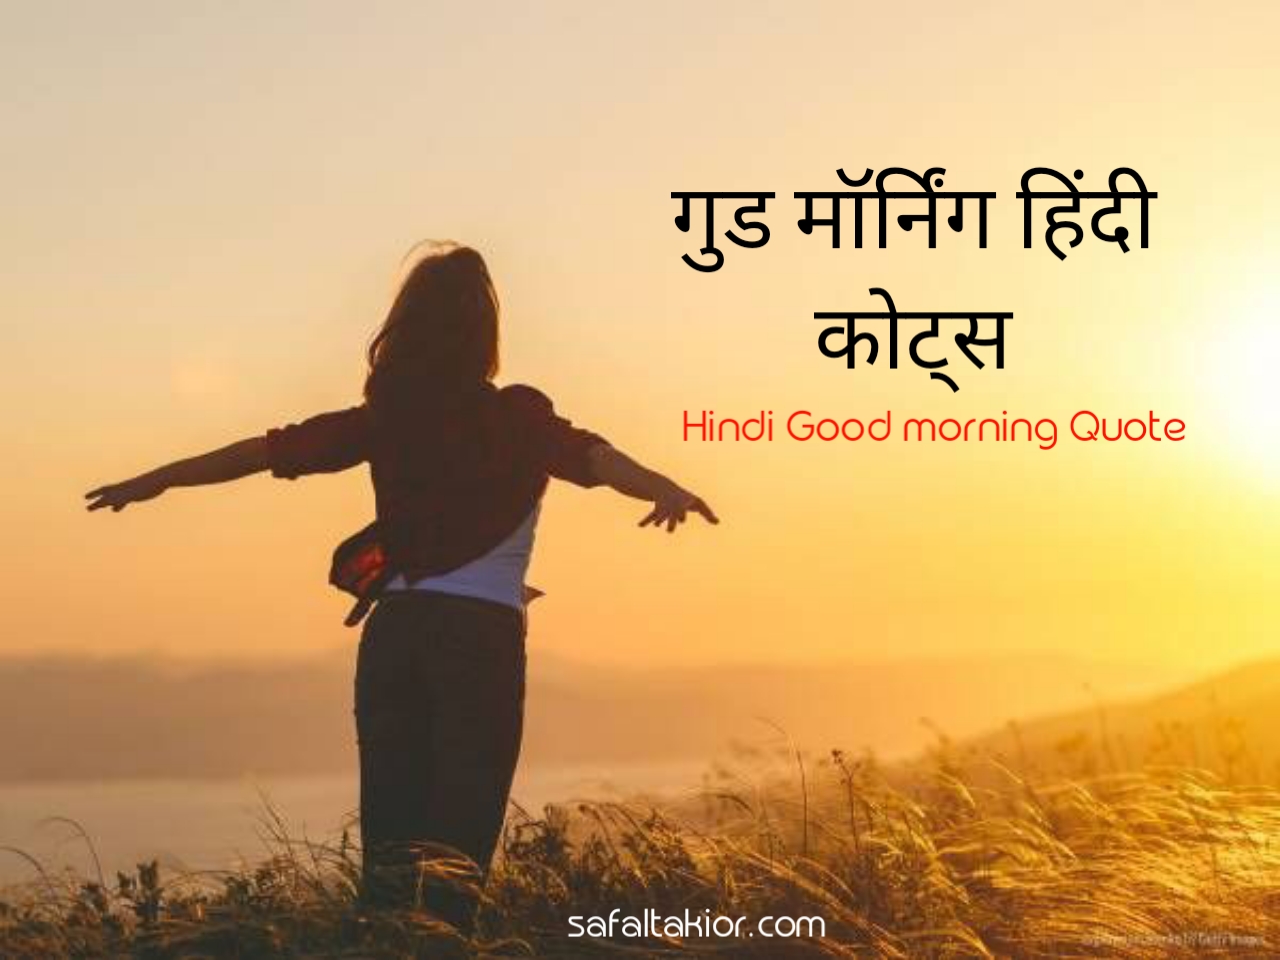 Good morning Hindi Quotes